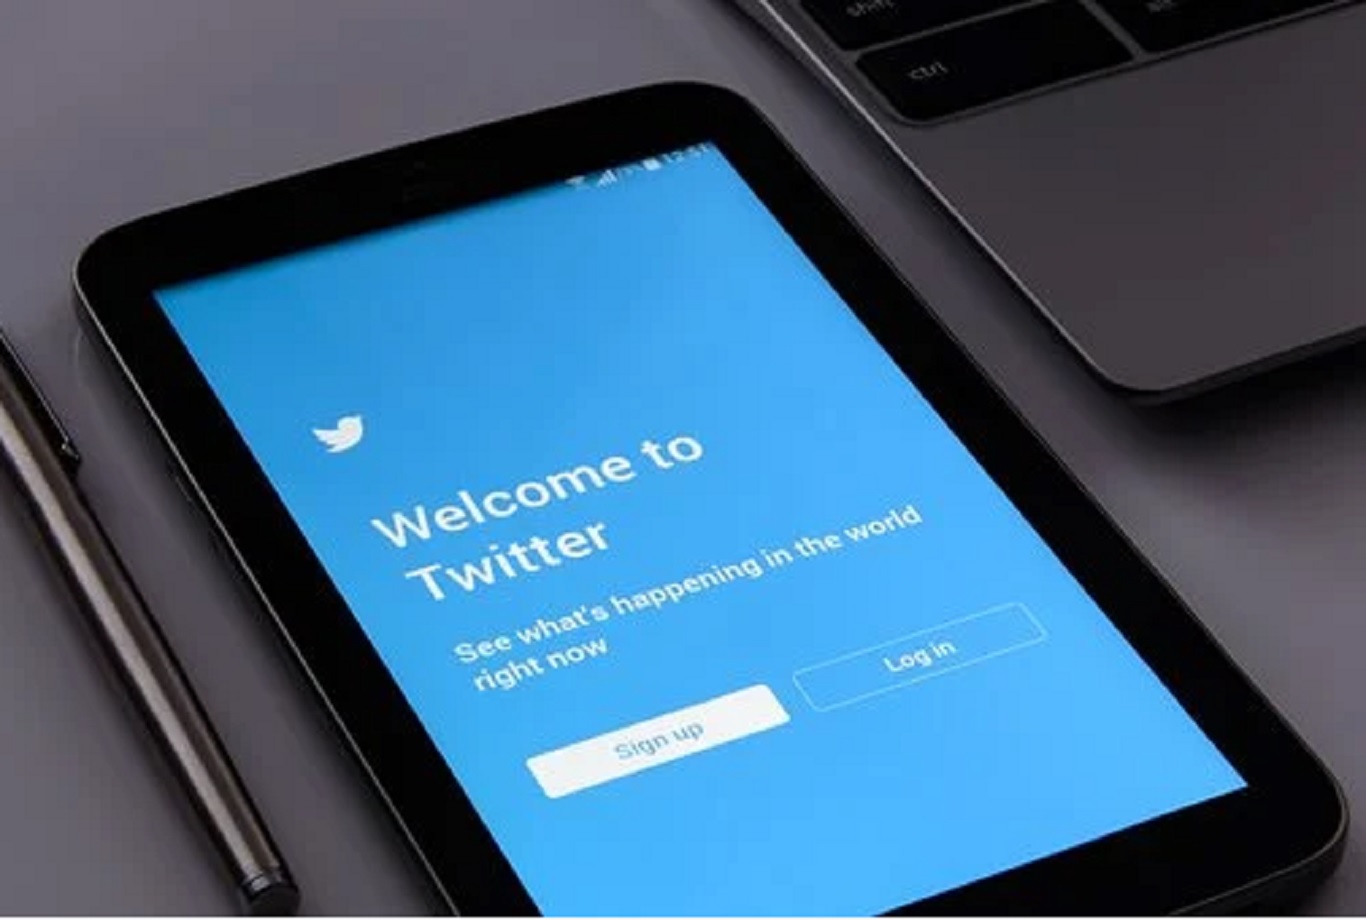 Twitter prohíbe compartir fotos y videos sin consentimiento